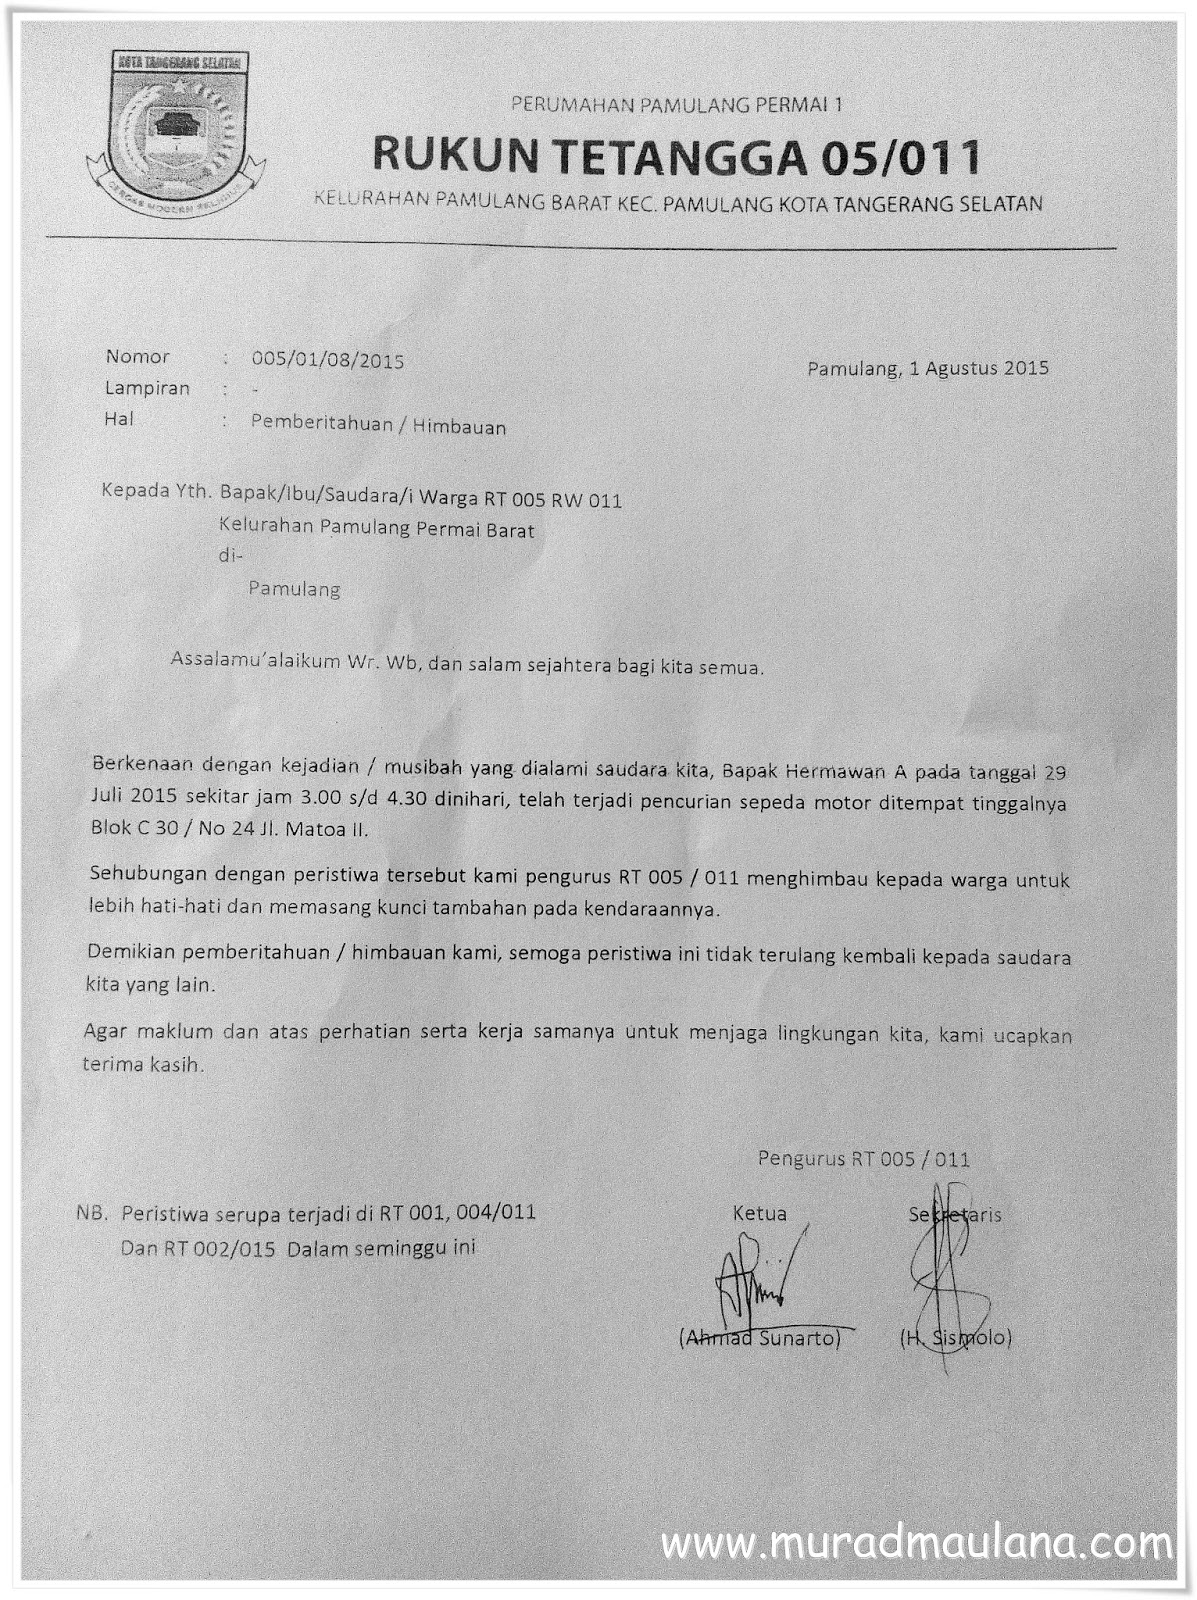 Contoh Surat Pemberitahuan Himbauan Dari Rt Murad Maulana